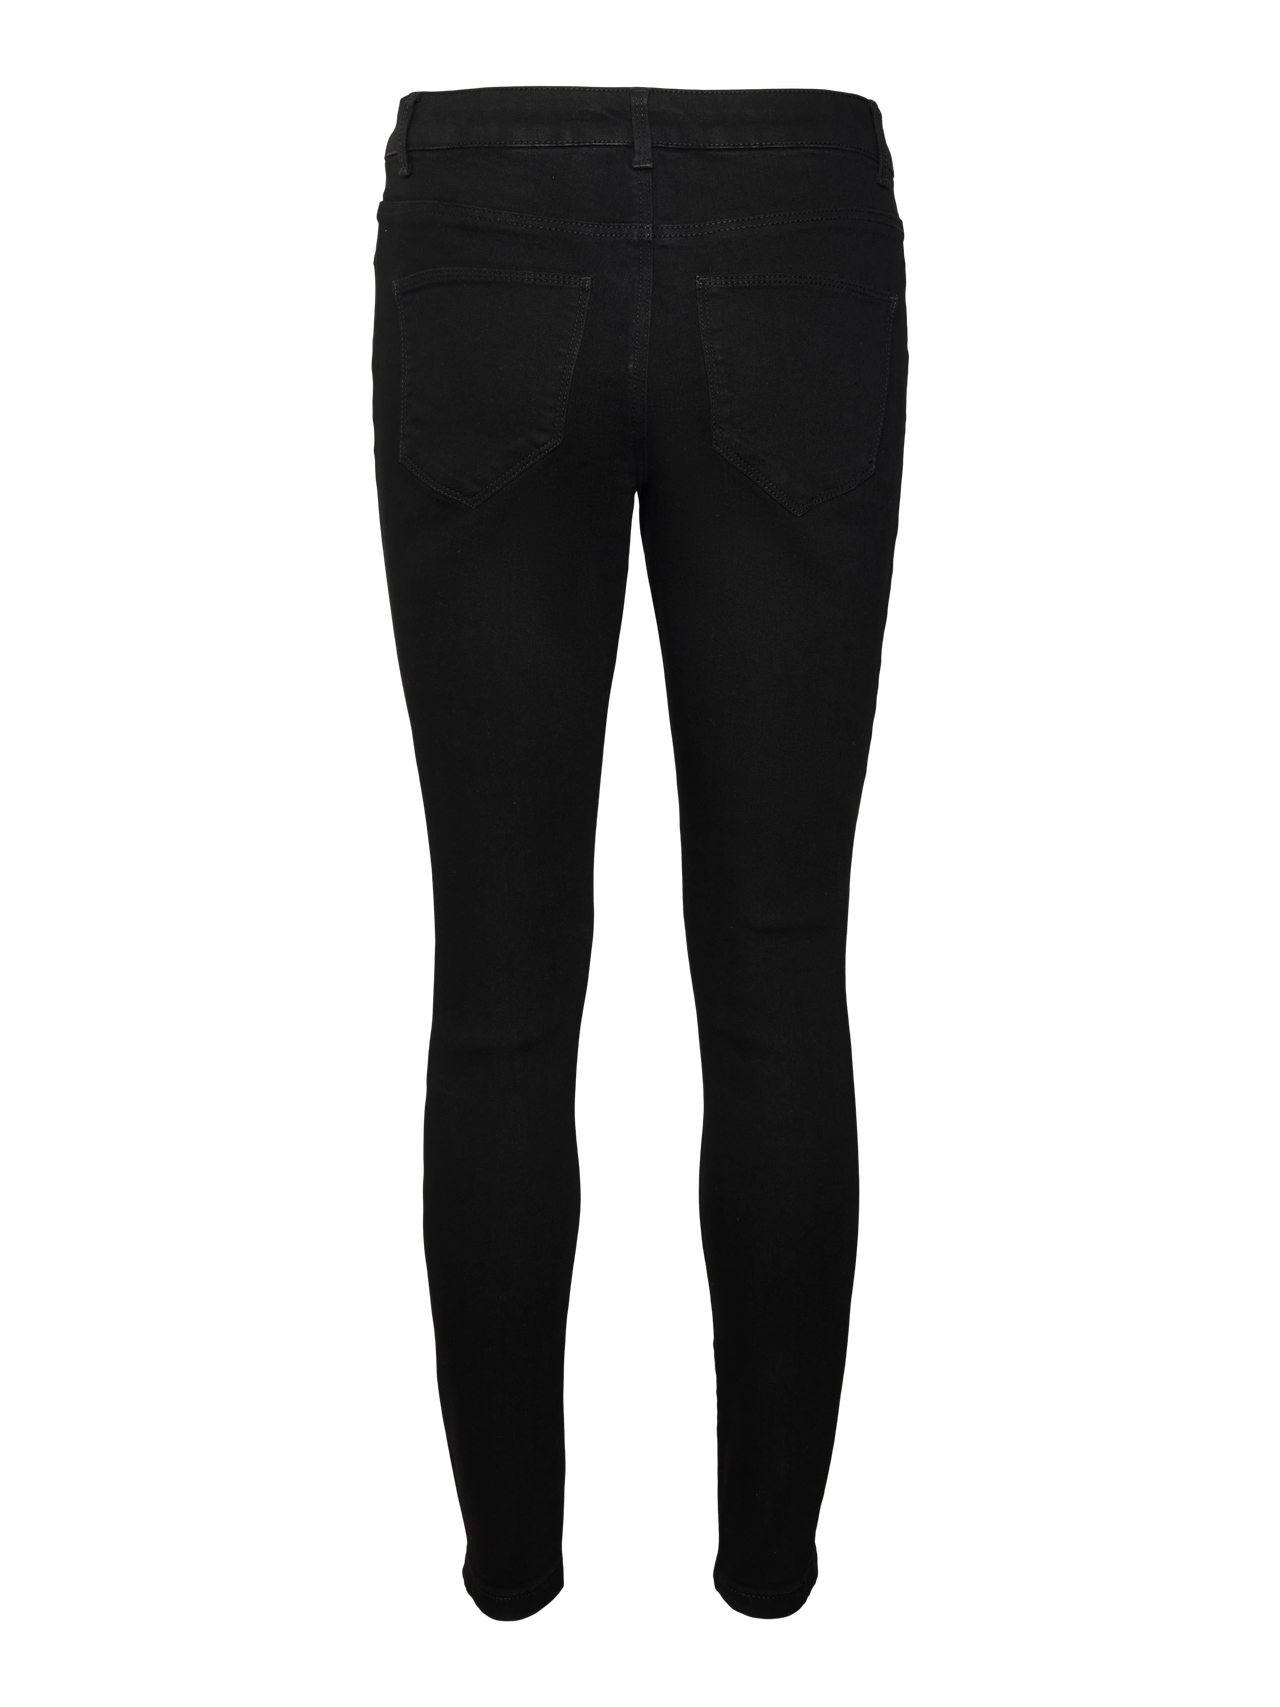 Vero Moda VMELLY Skinny fit Jeans -Black - 10310691